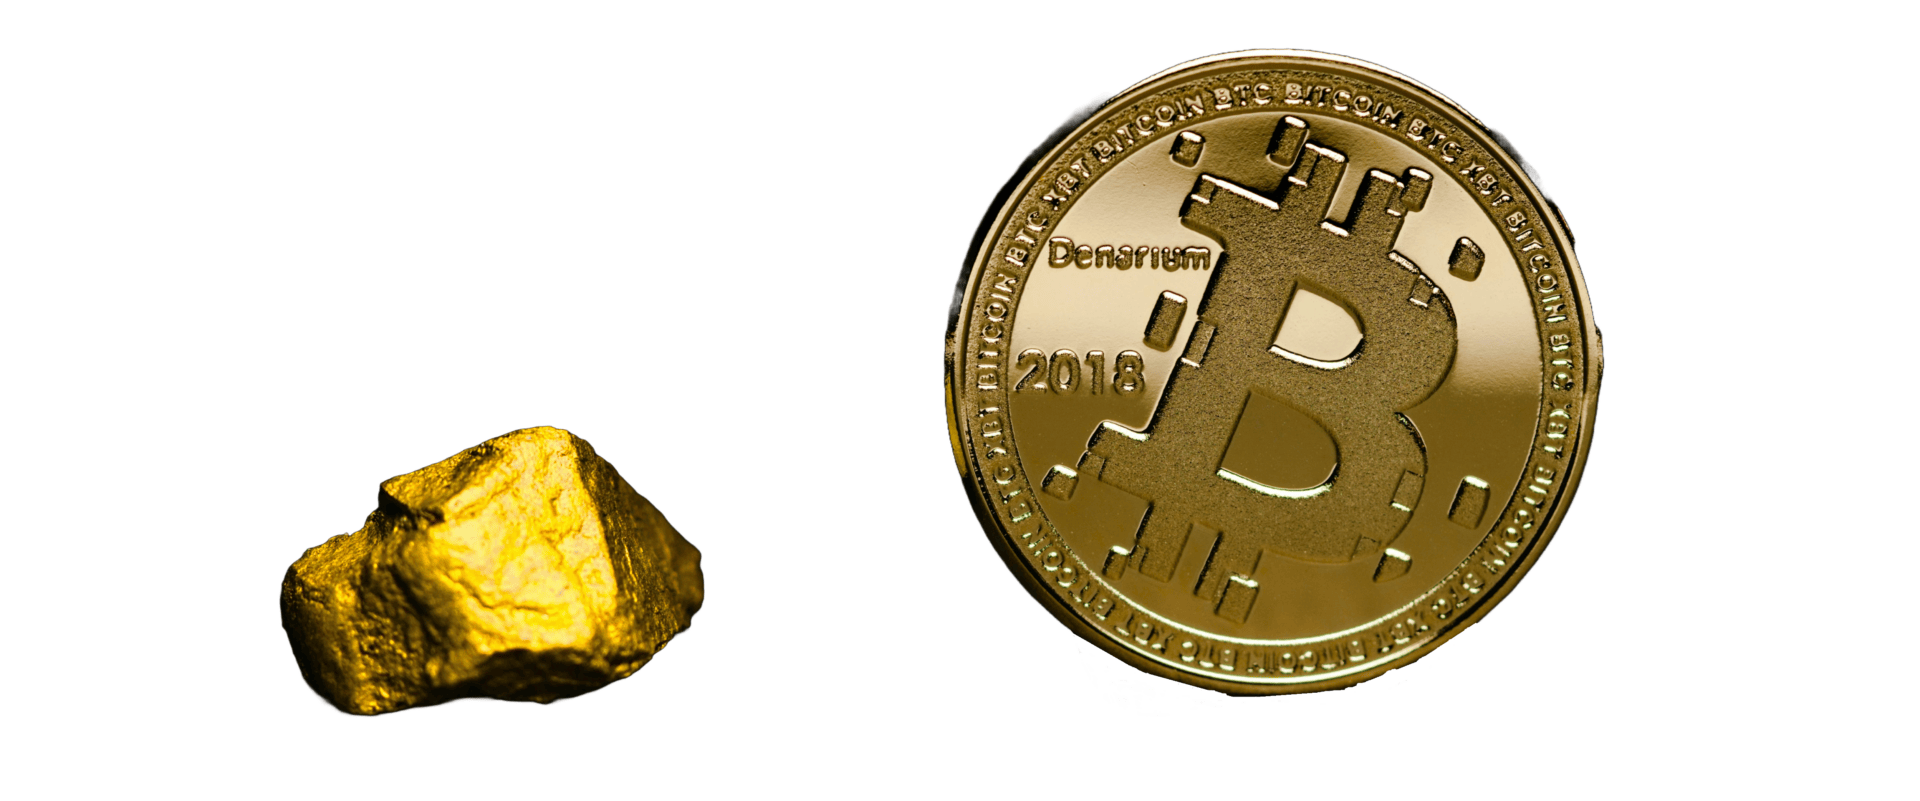 Goudklomp en bitcoin munt